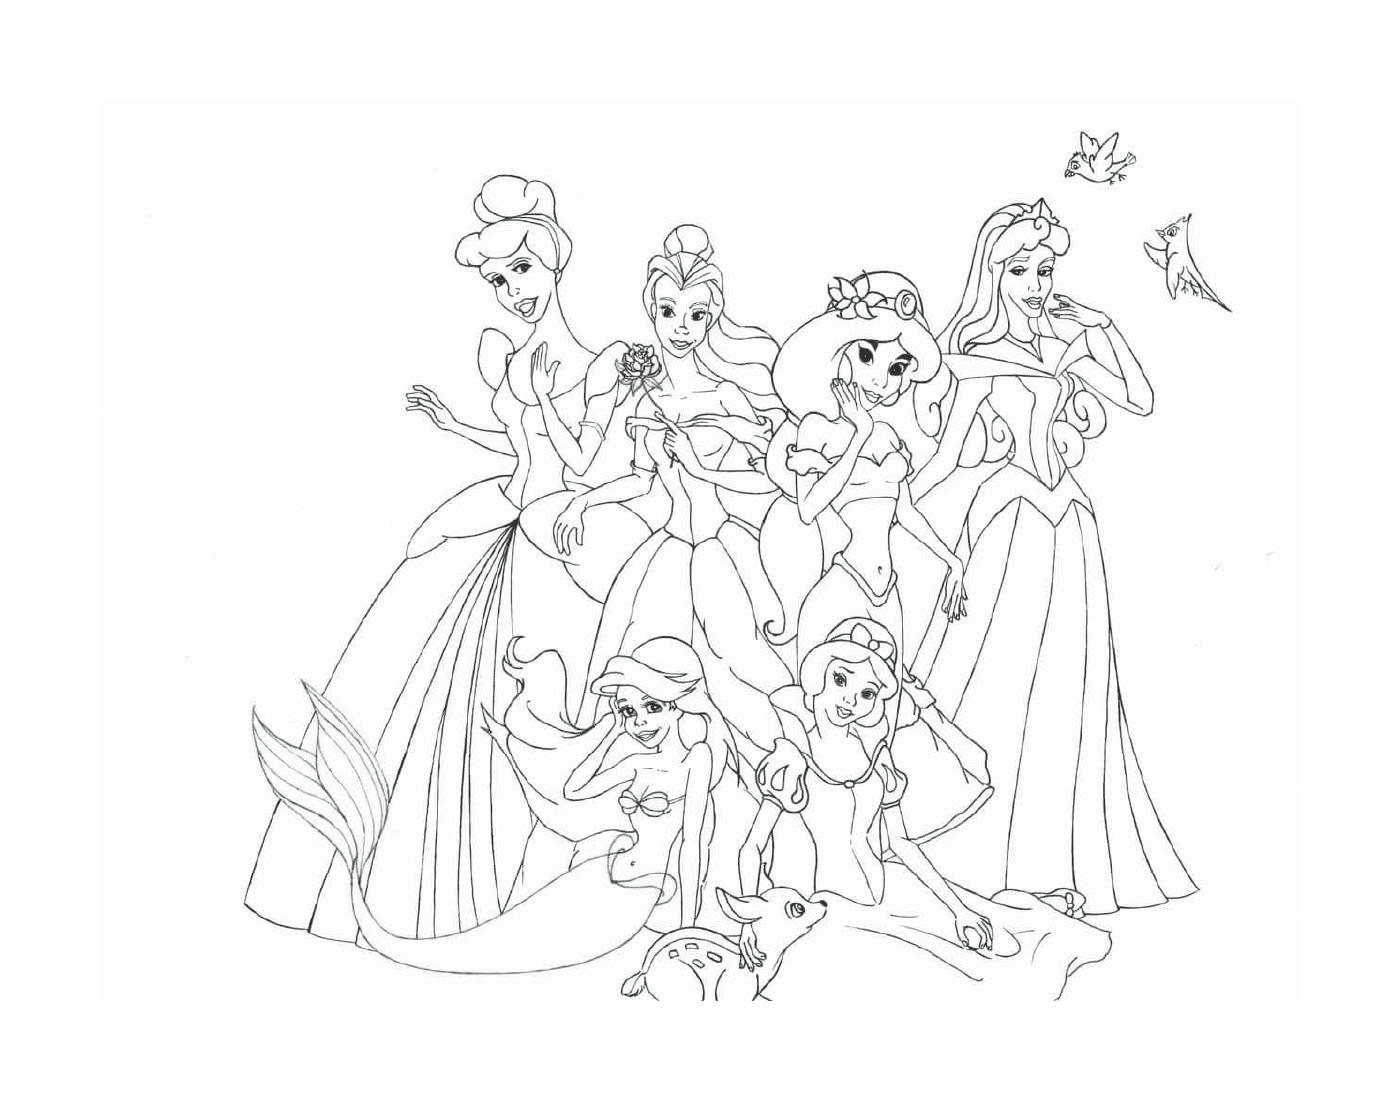  Um grupo de princesas da Disney sentadas e de pé juntas 